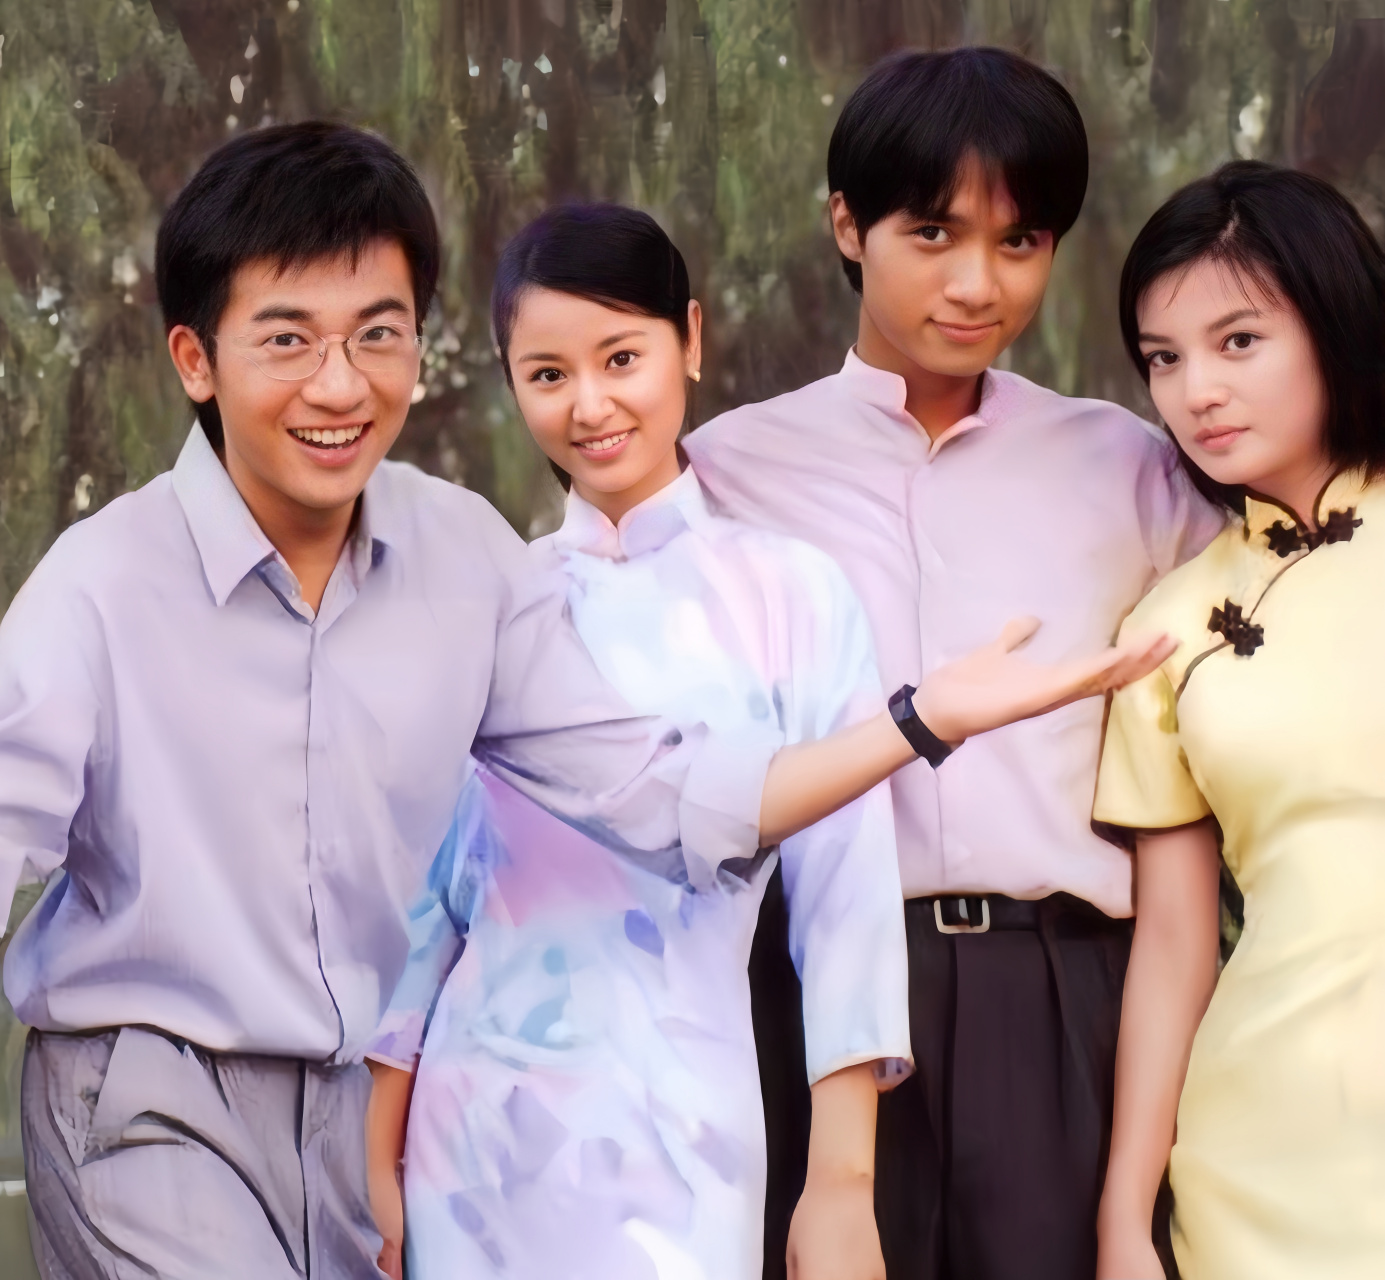 2001年,饰演《情深深雨蒙蒙》的主演:赵薇,古巨基,林心如,苏有朋,四个